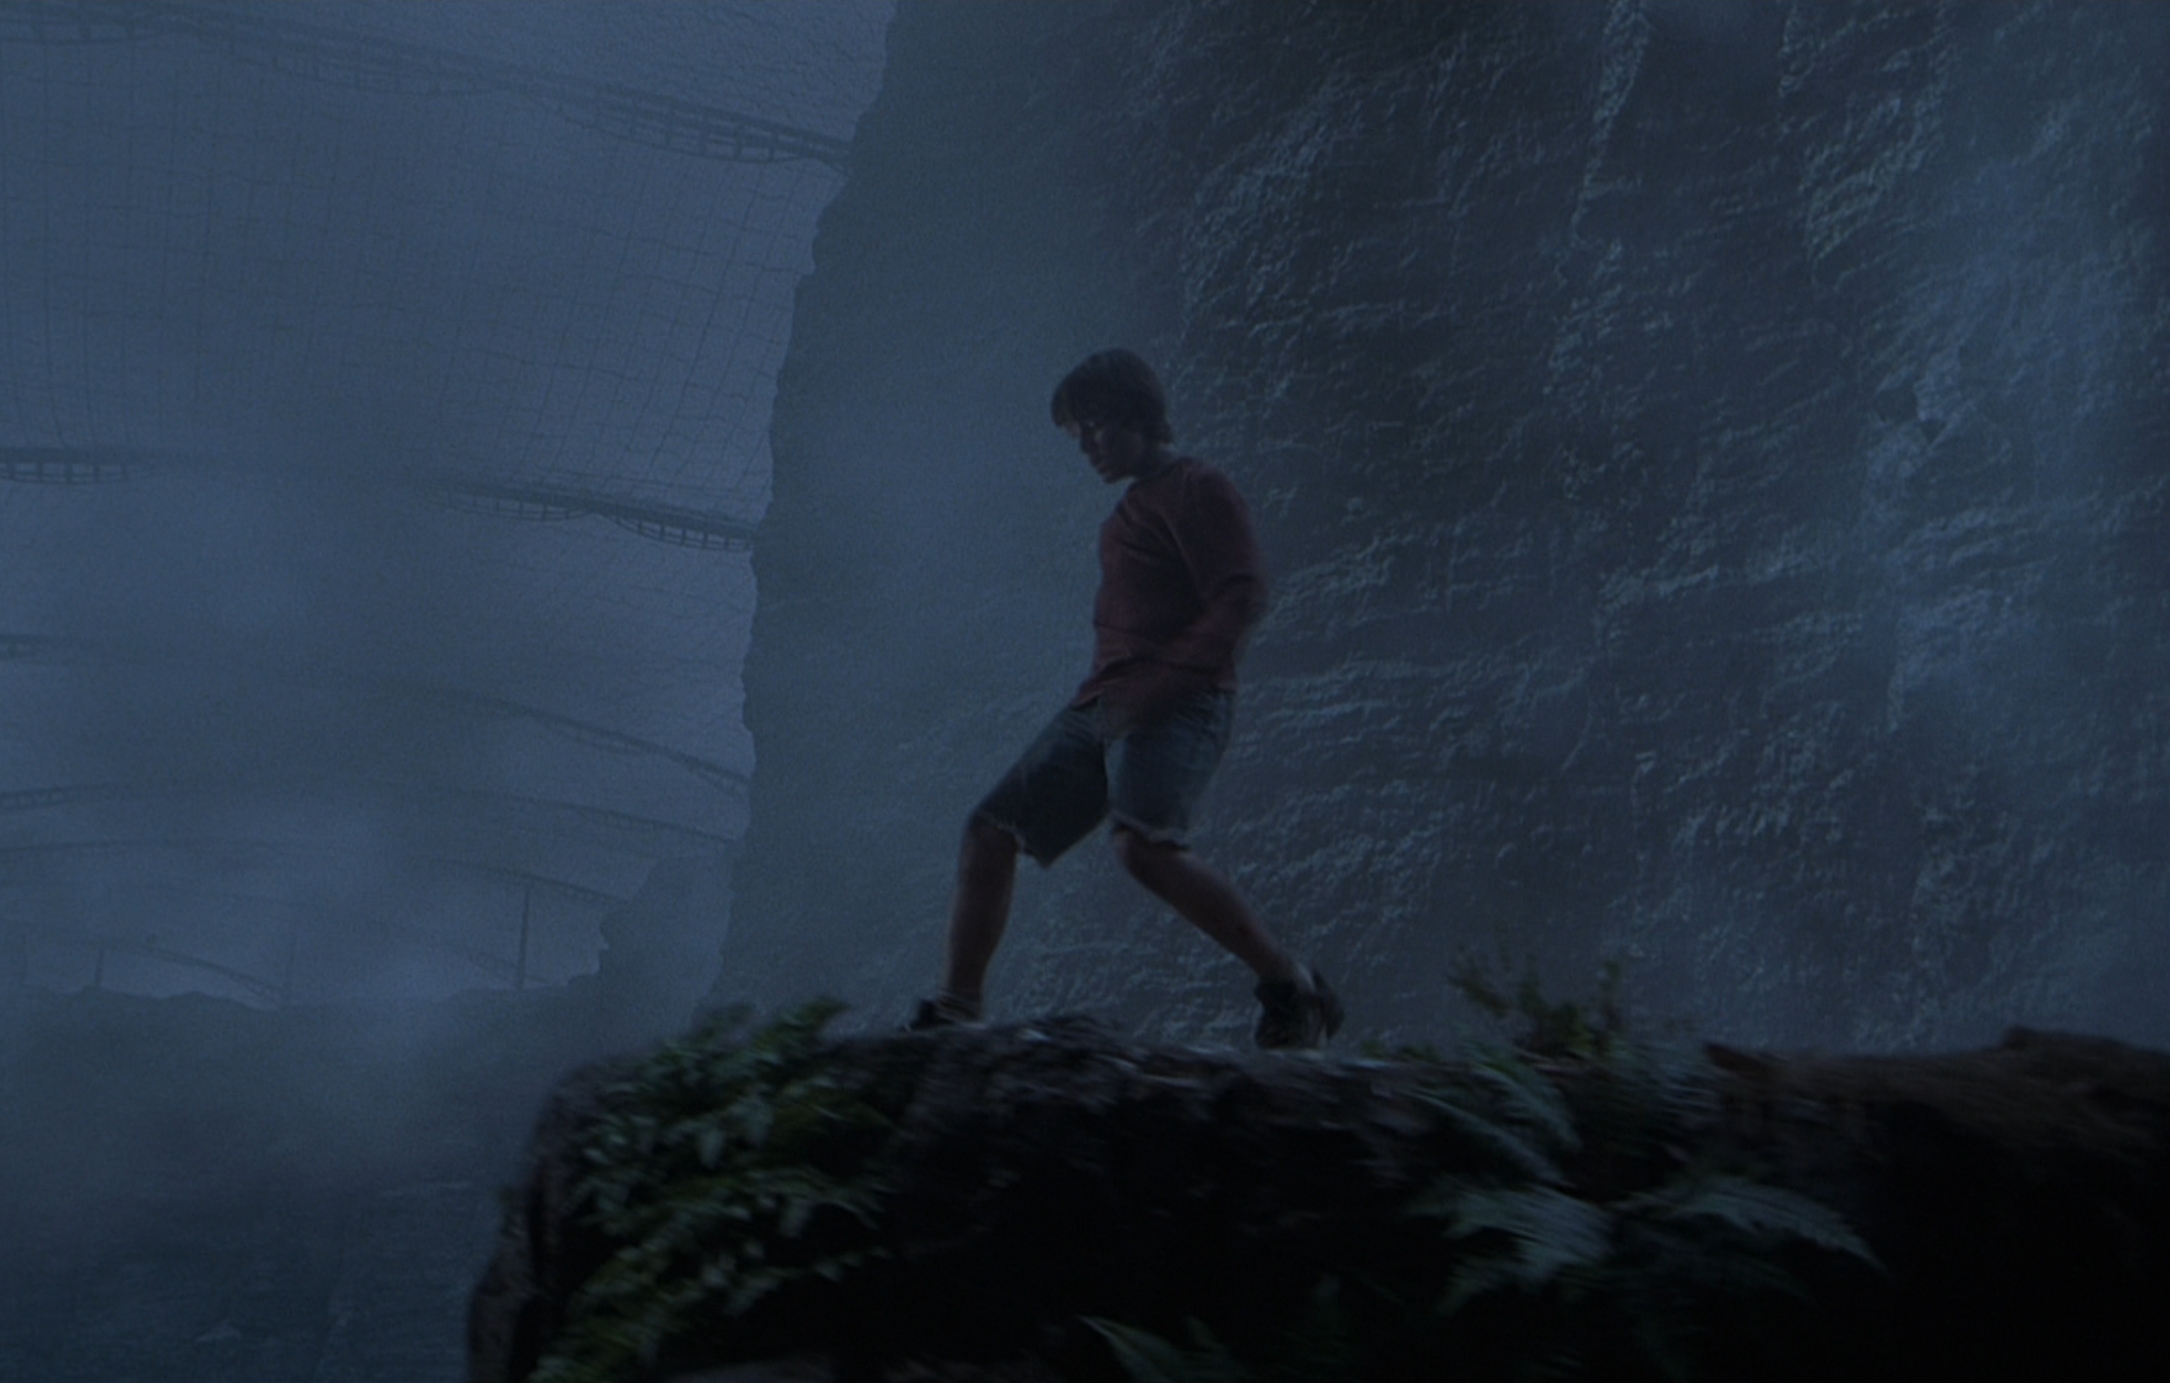 Trevor Morgan in Jurassic Park III